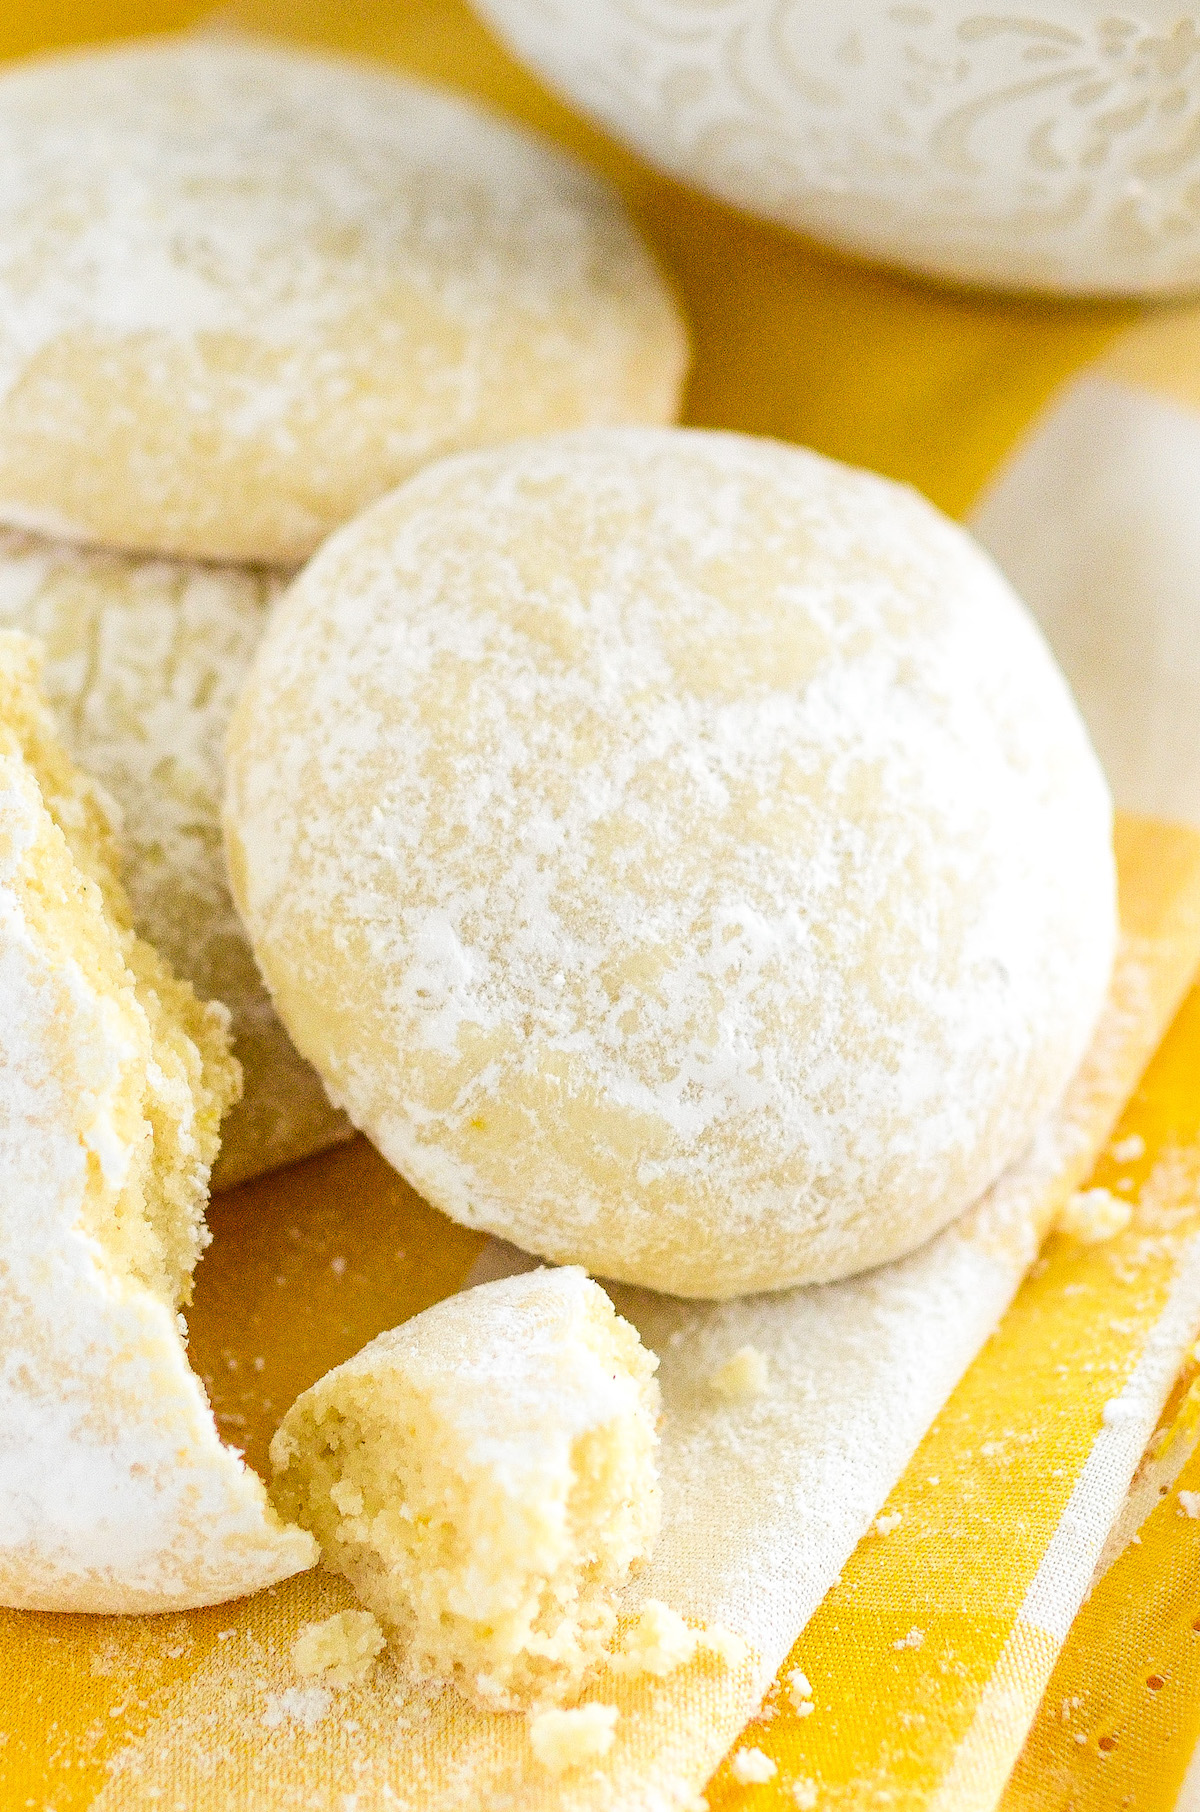 Lemon cooler cookies coated in powdered sugar.